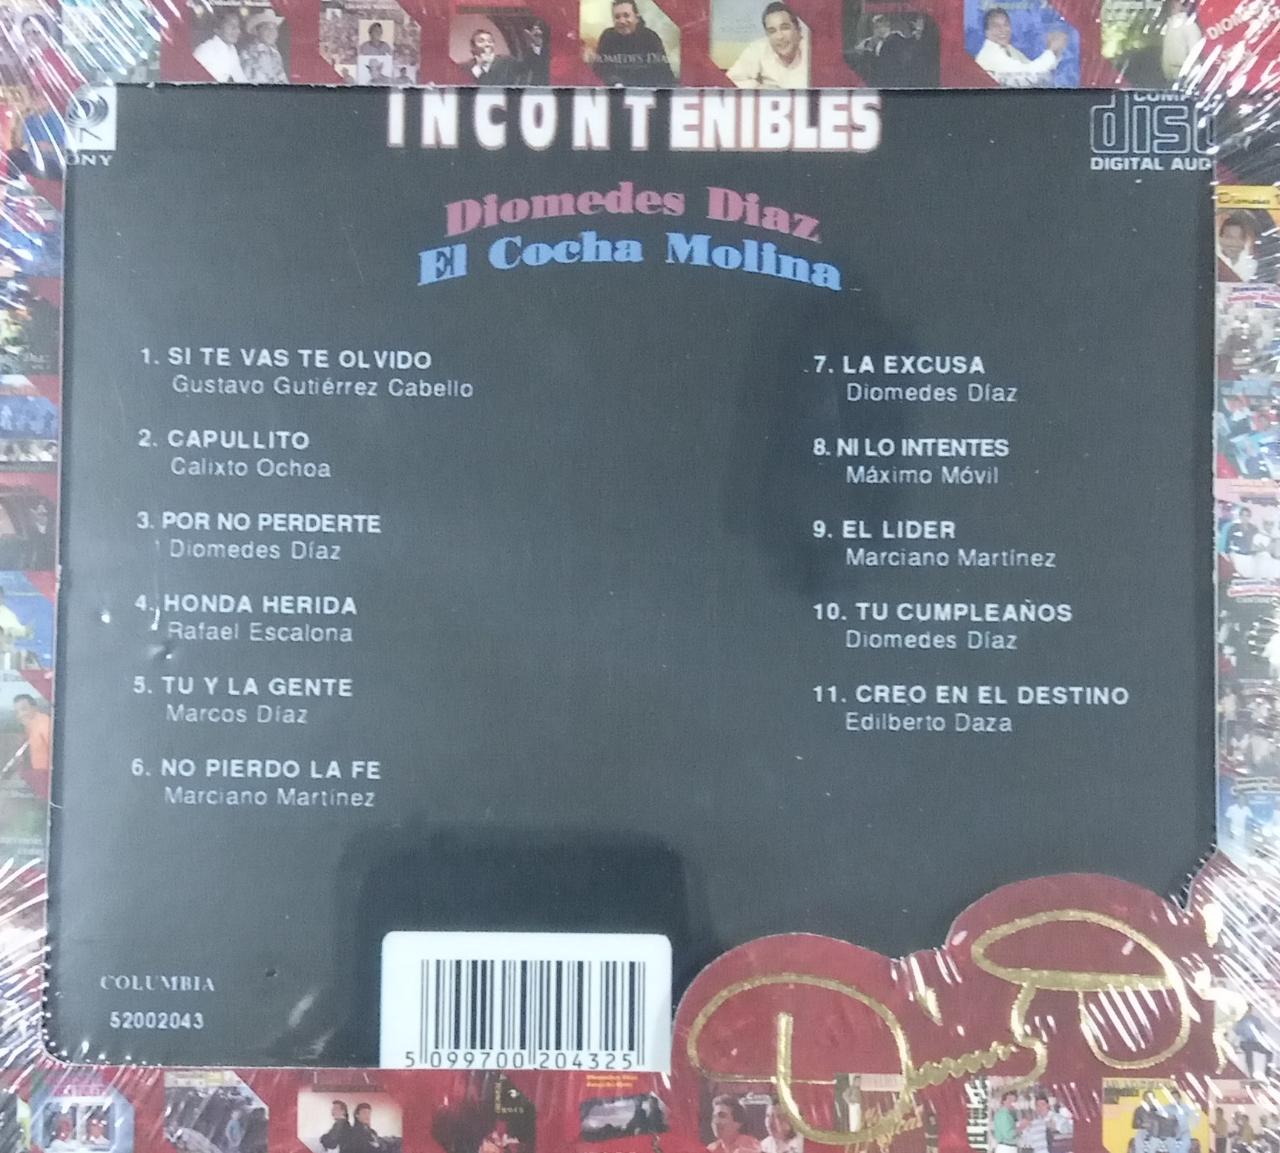 CD Diomedes Diaz - el "Cocha" Molina - Incontenibles